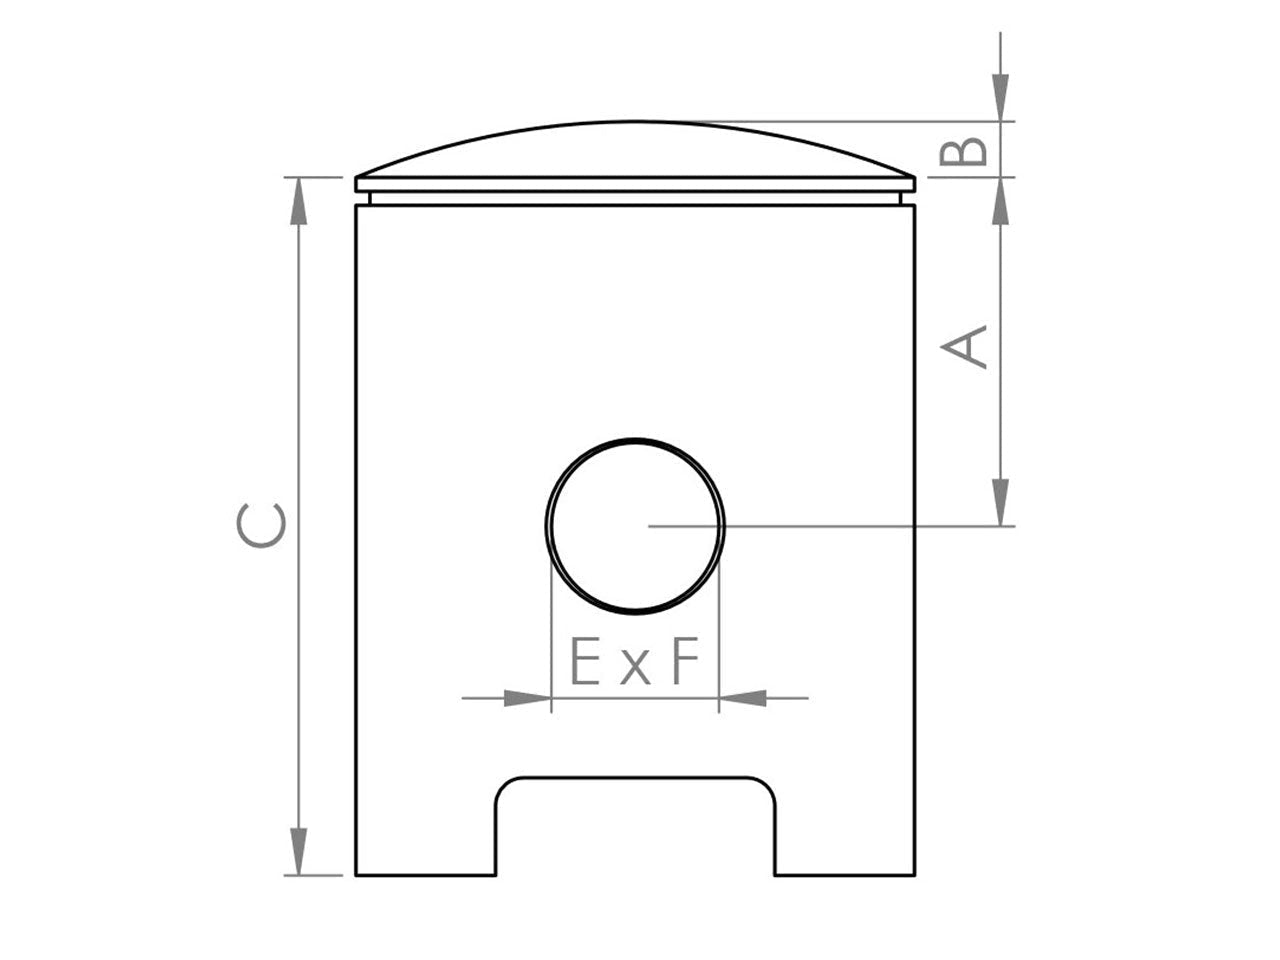 Zeichnung Barikit Kolben für einen Montesa Motor mit Bemaßung.